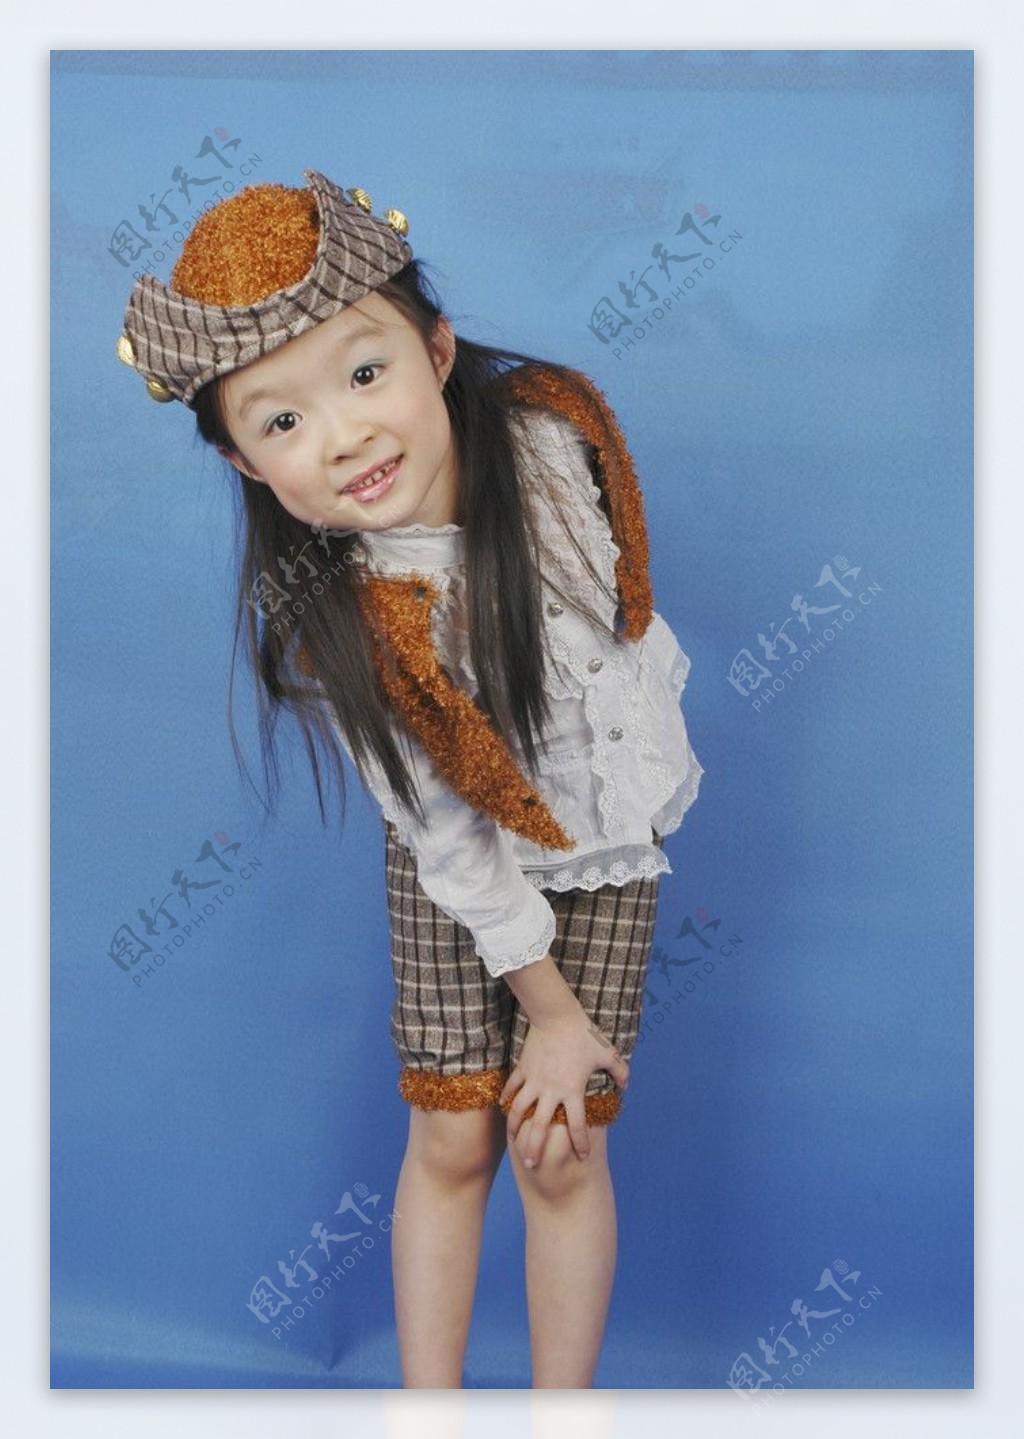 最漂亮美丽的小姑娘漂亮儿童漂亮儿童幼儿小孩人物图库摄影300DPIJPG图片